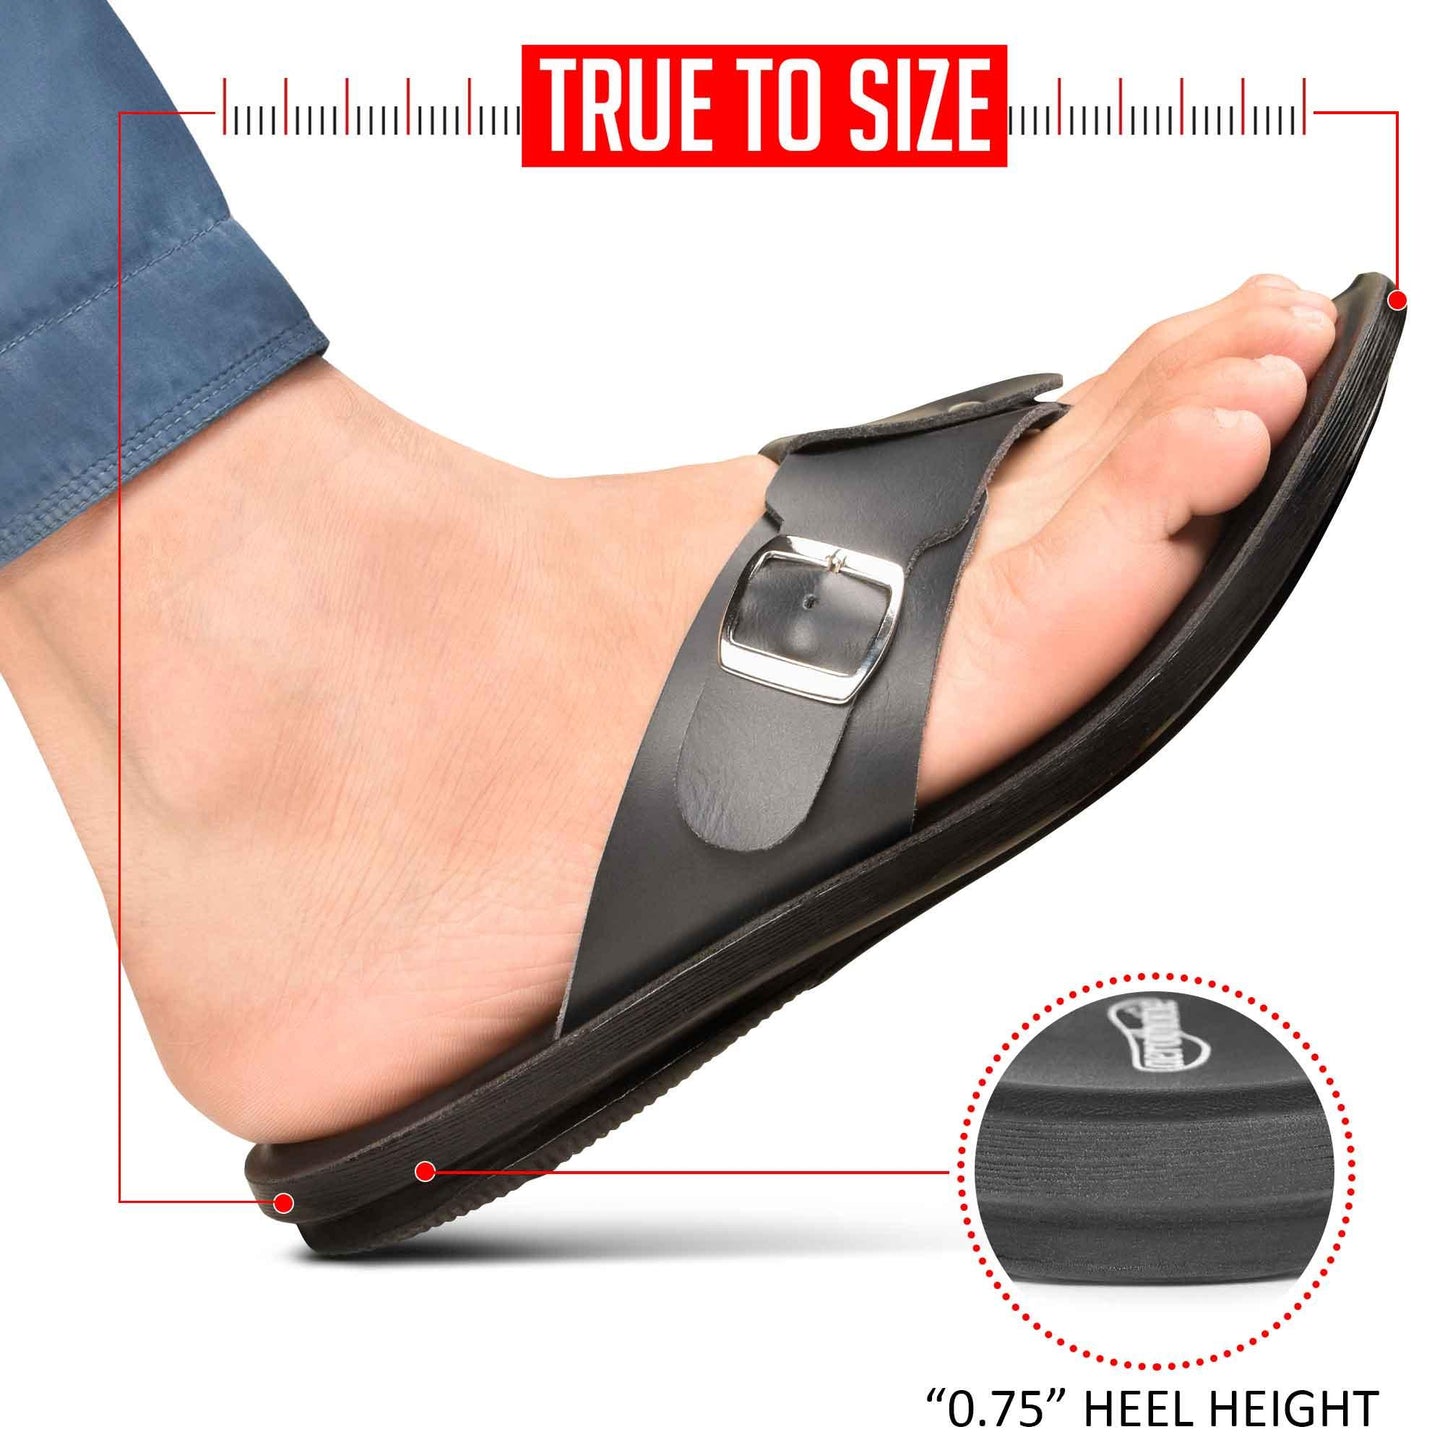 AEROTHOTIC Cercis Men’s Comfortable Toe Post Summer Flip Flops – Original Thailand Imported – M1703